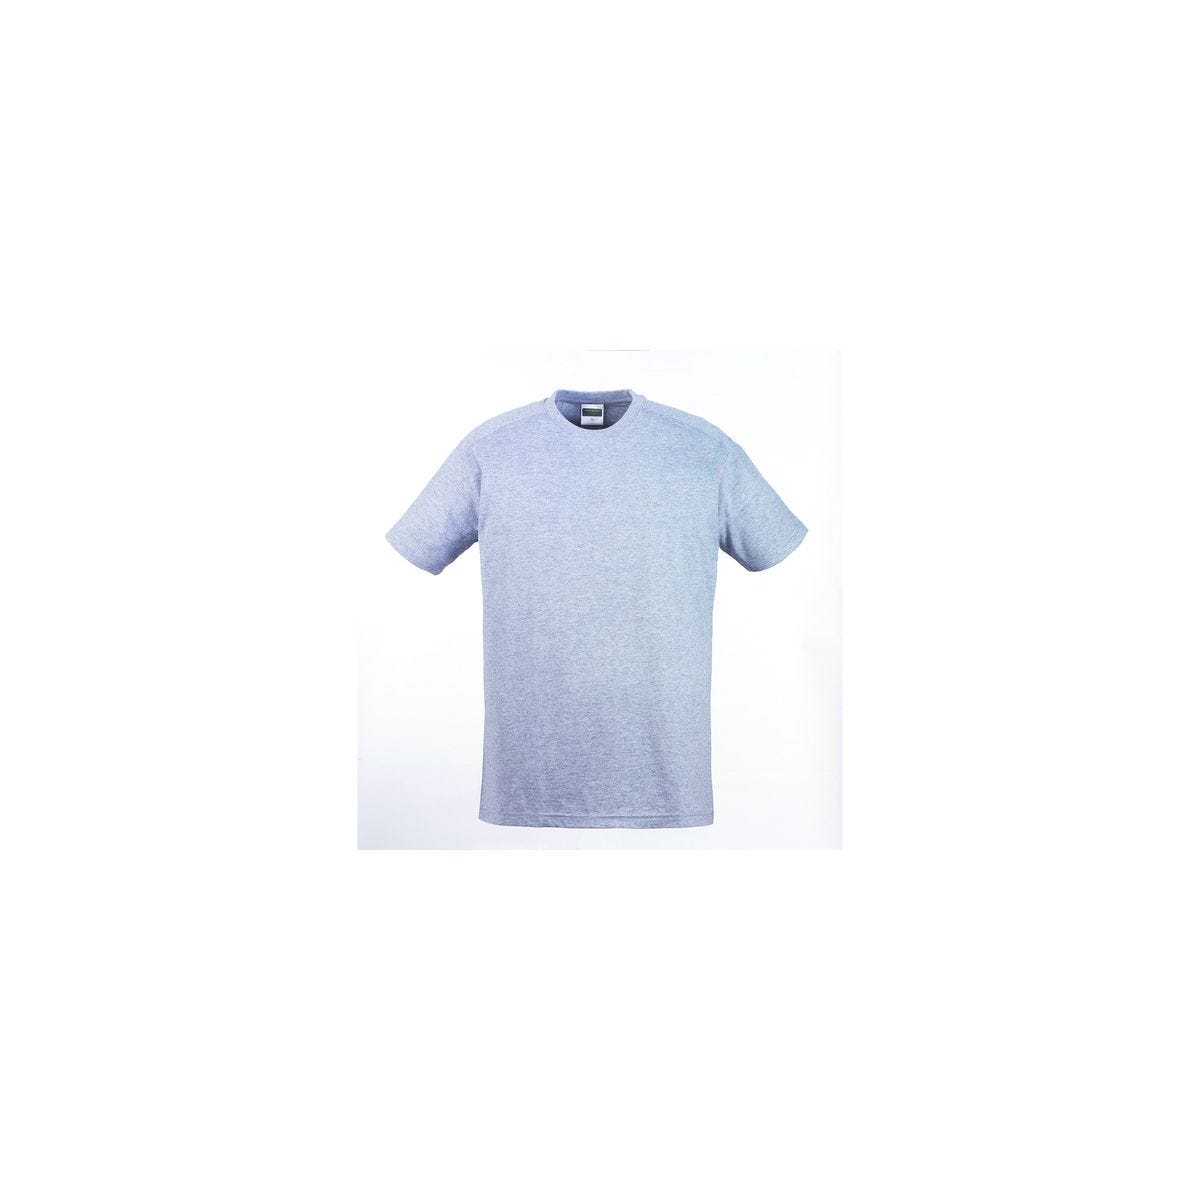 T-shirt TRIP MC gris chiné - COVERGUARD - Taille 3XL 0